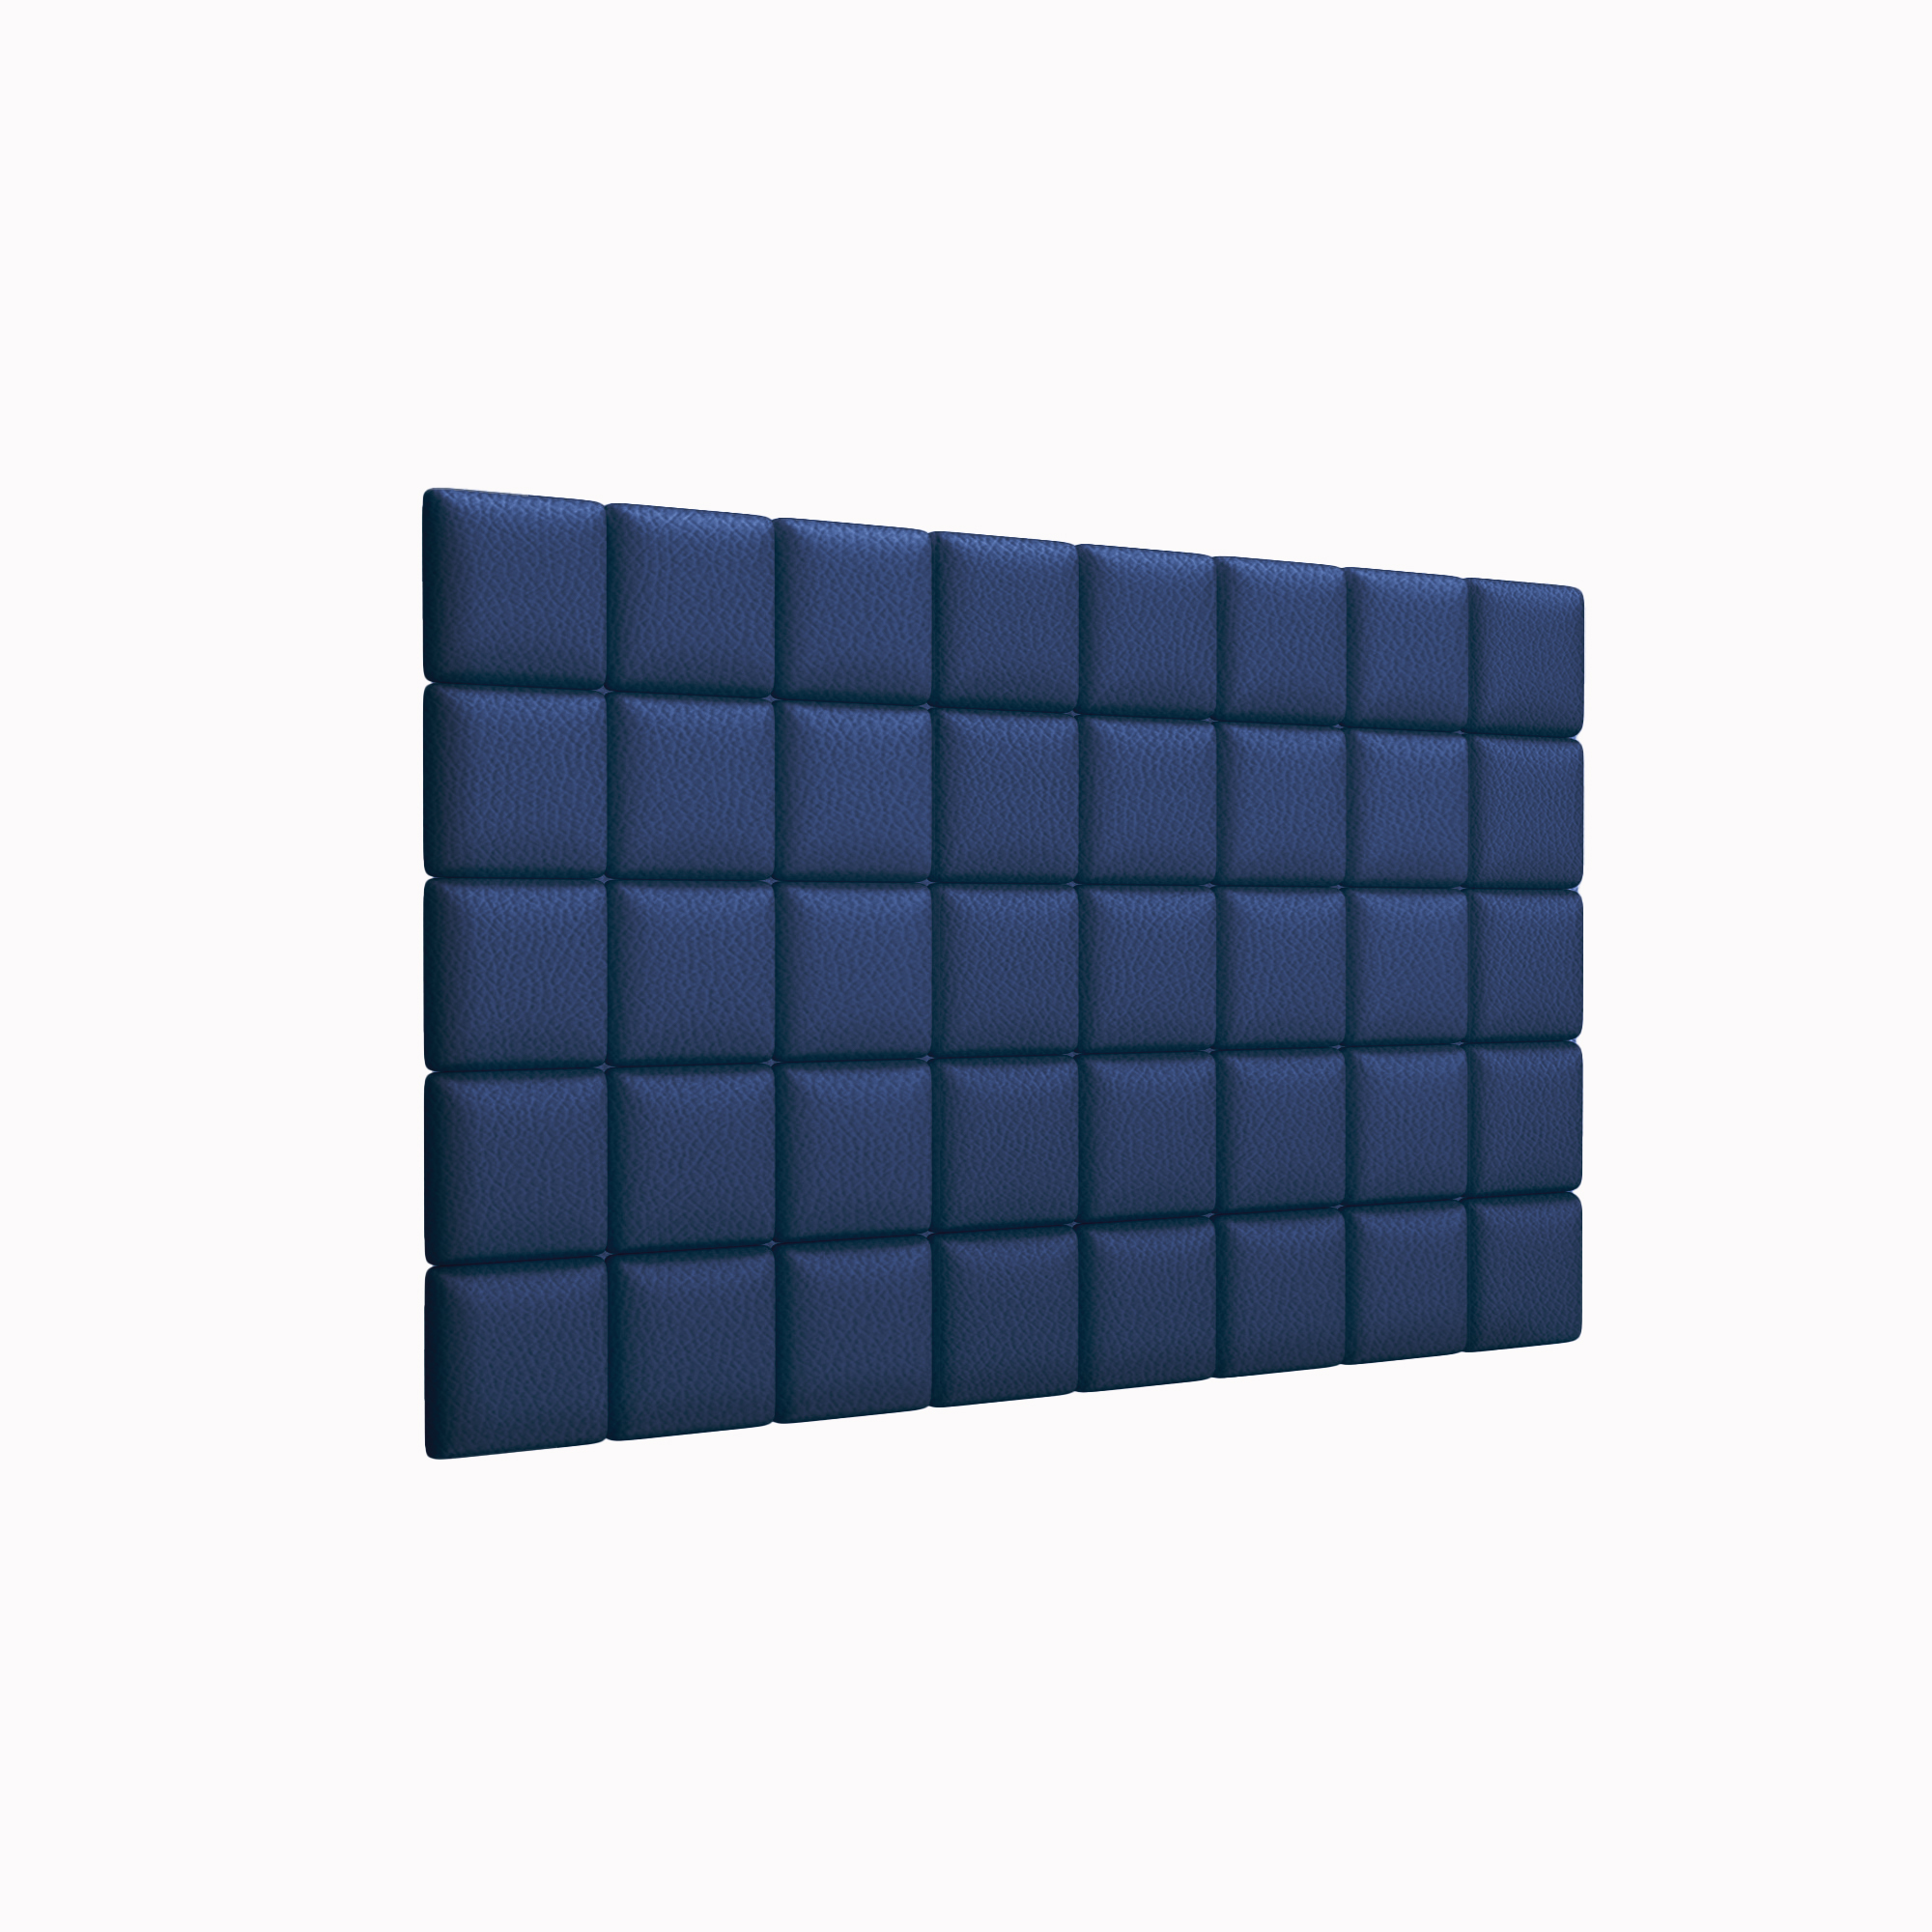 Мягкие стеновые панели Eco Leather Blue 15х15 см 8 шт. пуходерка пластиковая с самоочисткой большая 12 х 20 см синяя